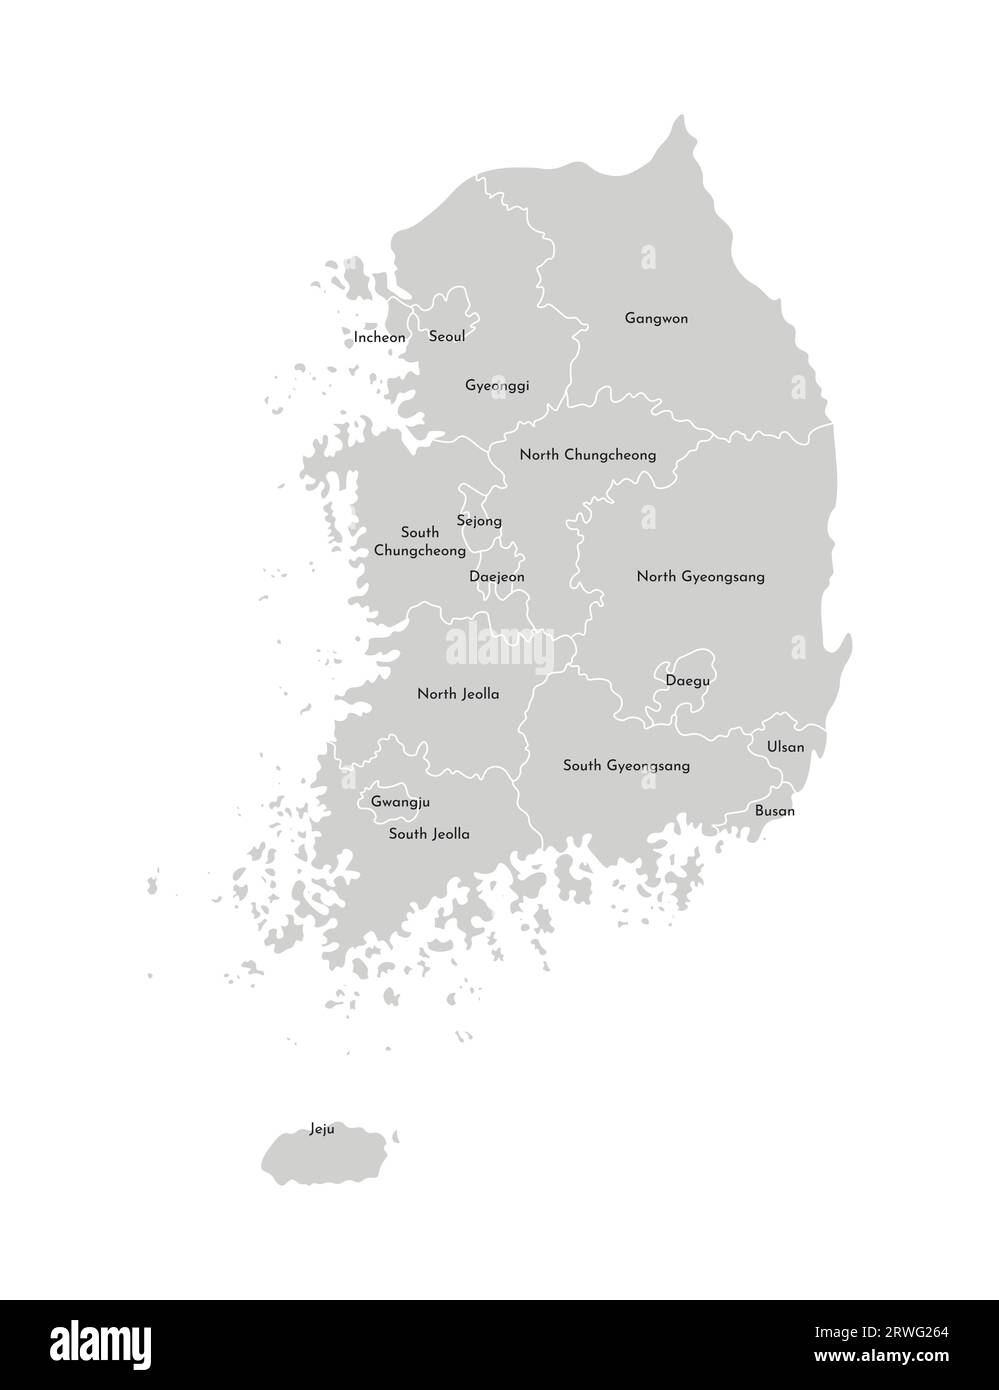 Illustration isolée vectorielle de la carte administrative simplifiée de la Corée du Sud (République de Corée). Frontières et noms des provinces (régions). Gris s Illustration de Vecteur